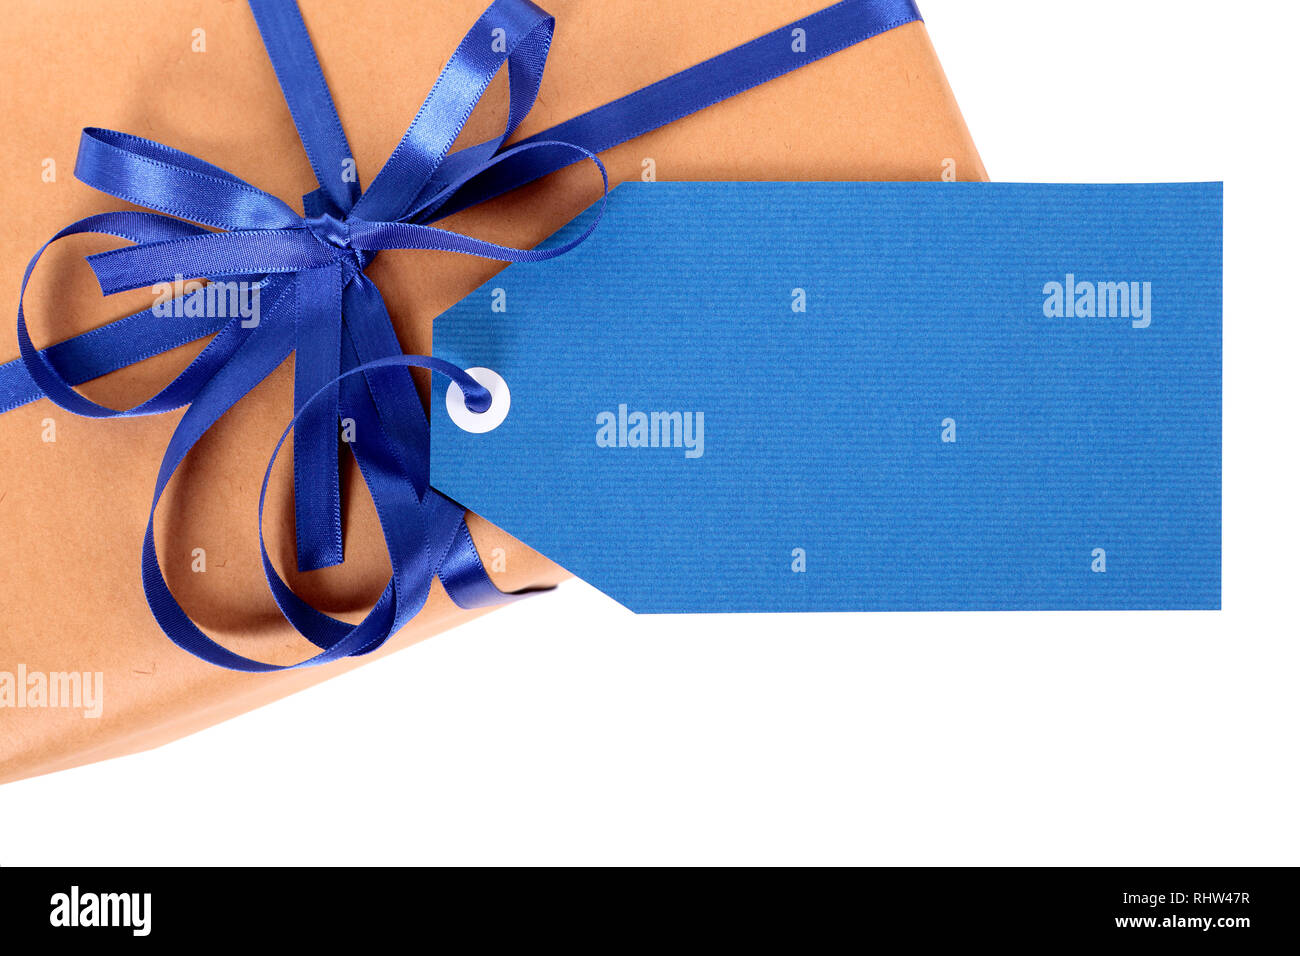 Einfachen braunen Papier Paket oder Paket, blau Geschenk Tag oder Etikett und Farbband auf weißem Hintergrund, Ansicht von oben Stockfoto